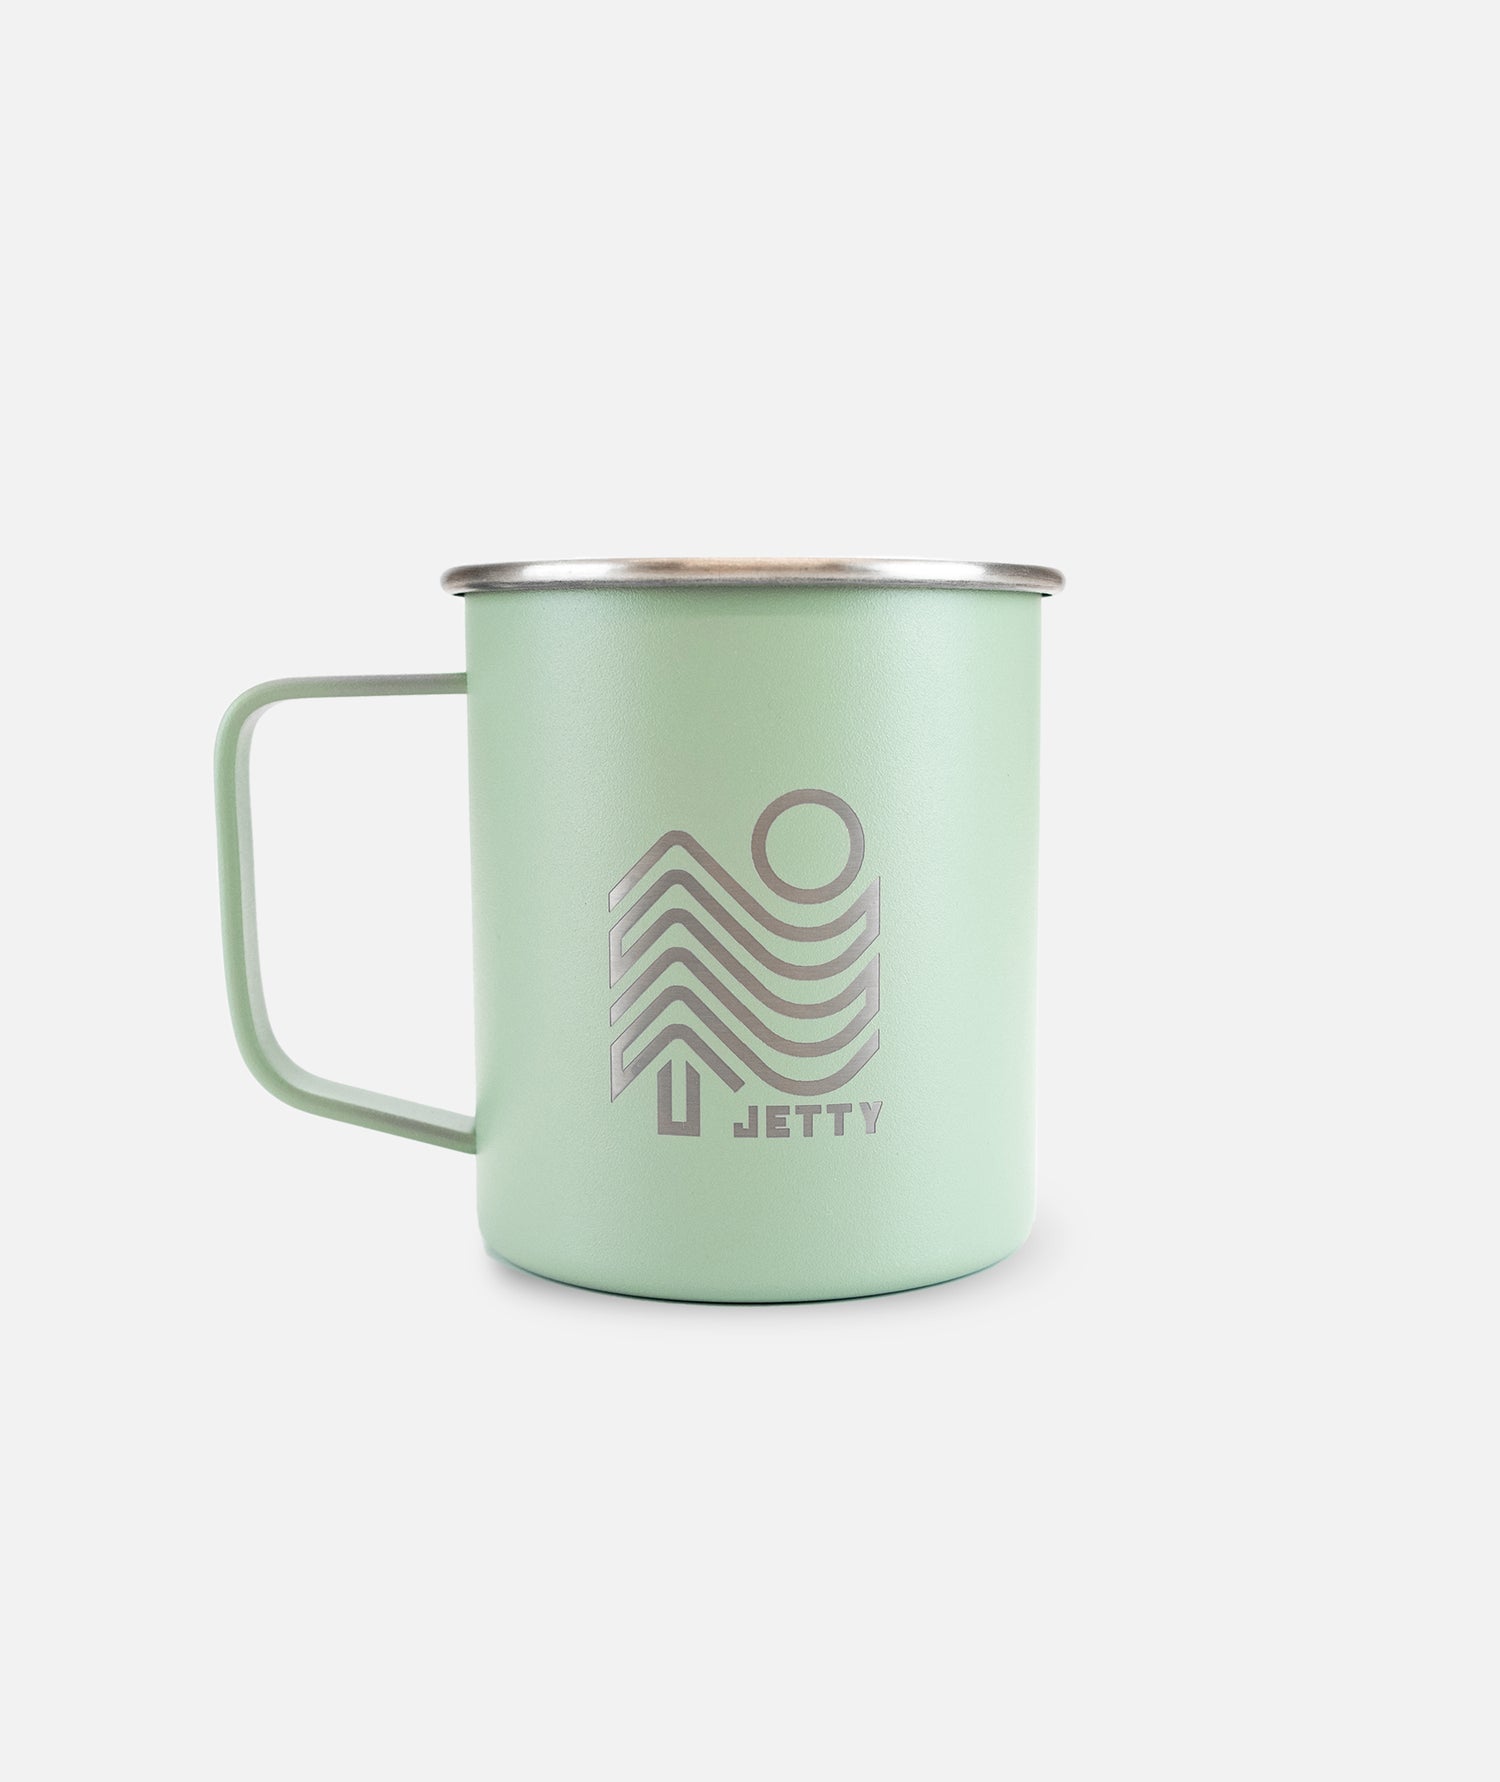 Mizu - Coffee Mug | 14 oz Stainless Mug | Vacuum Insulated | Stainless Stainless